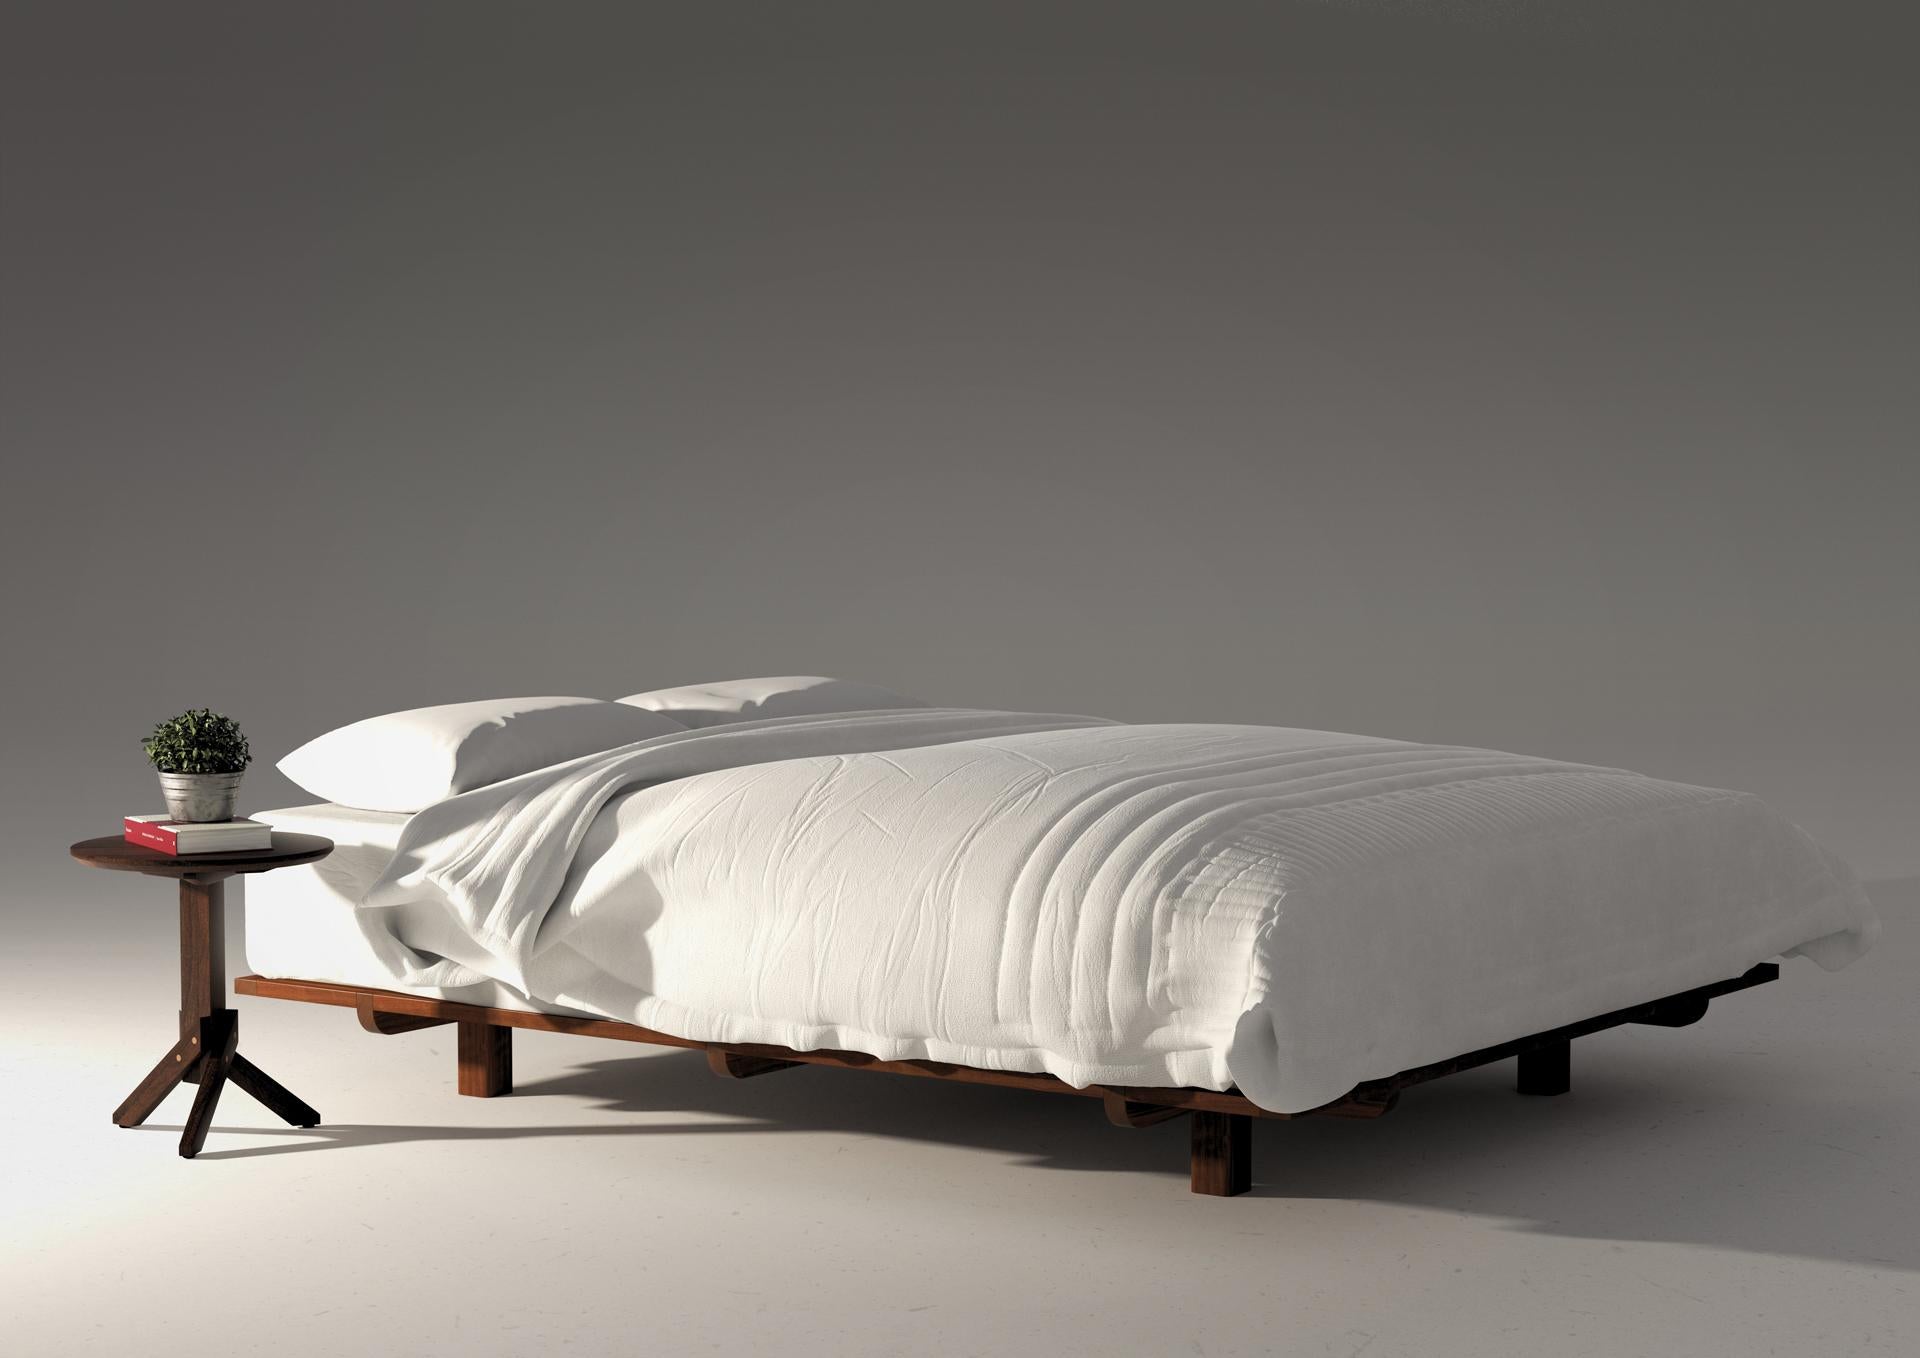 Avec ses pieds en retrait, le lit Villa-Lobos donne une incroyable sensation de légèreté. Comme déjà traditionnel dans notre travail, ce lit est doté d'un aménagement simple qui le rend facile à assembler et à transporter.

Matériaux : bois de